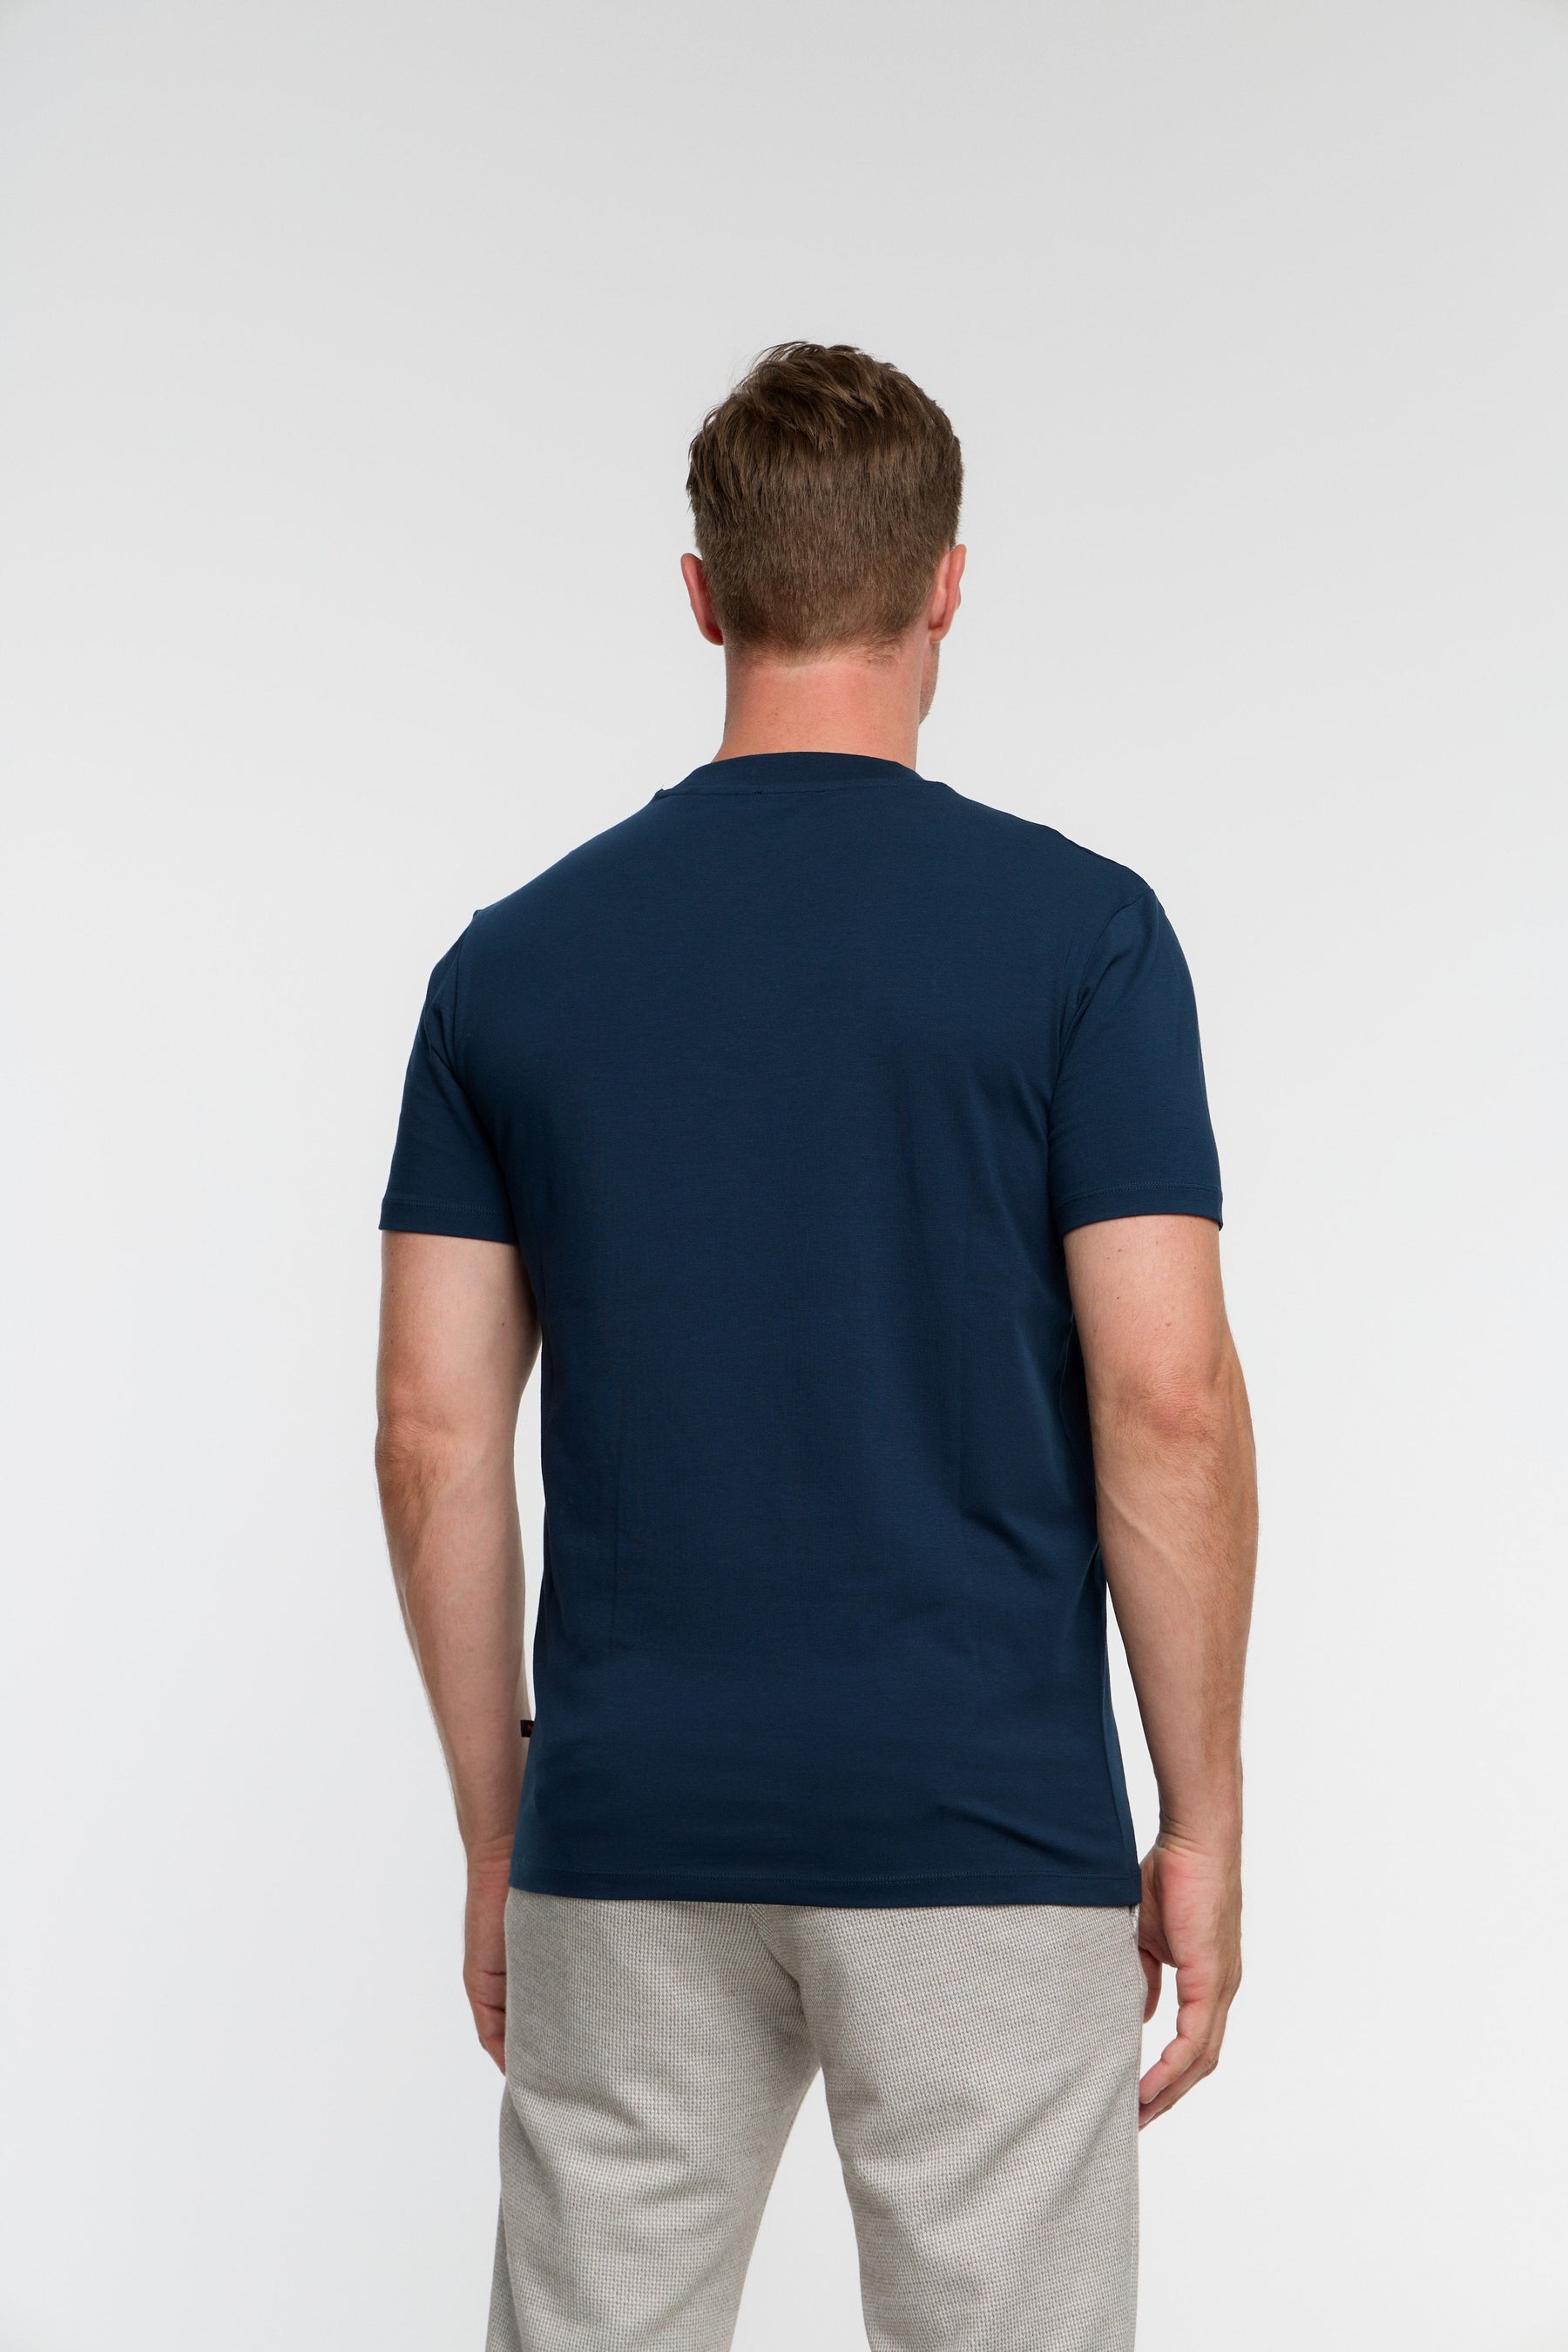 T-Shirt DiFlo 201-690 Dark Blue